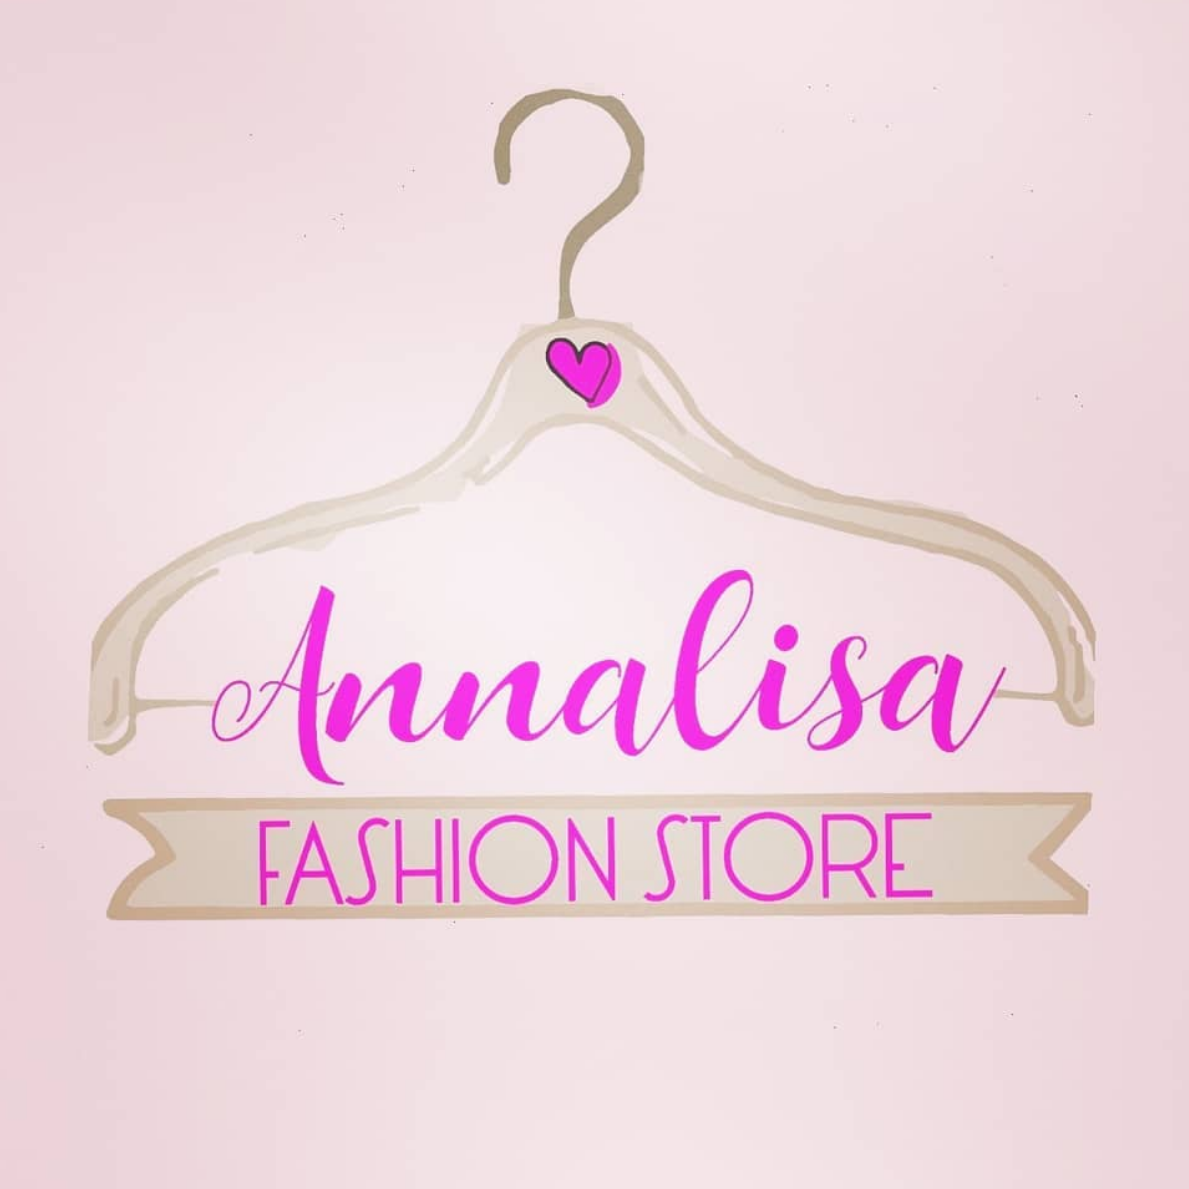 Annalisa Fashion Store